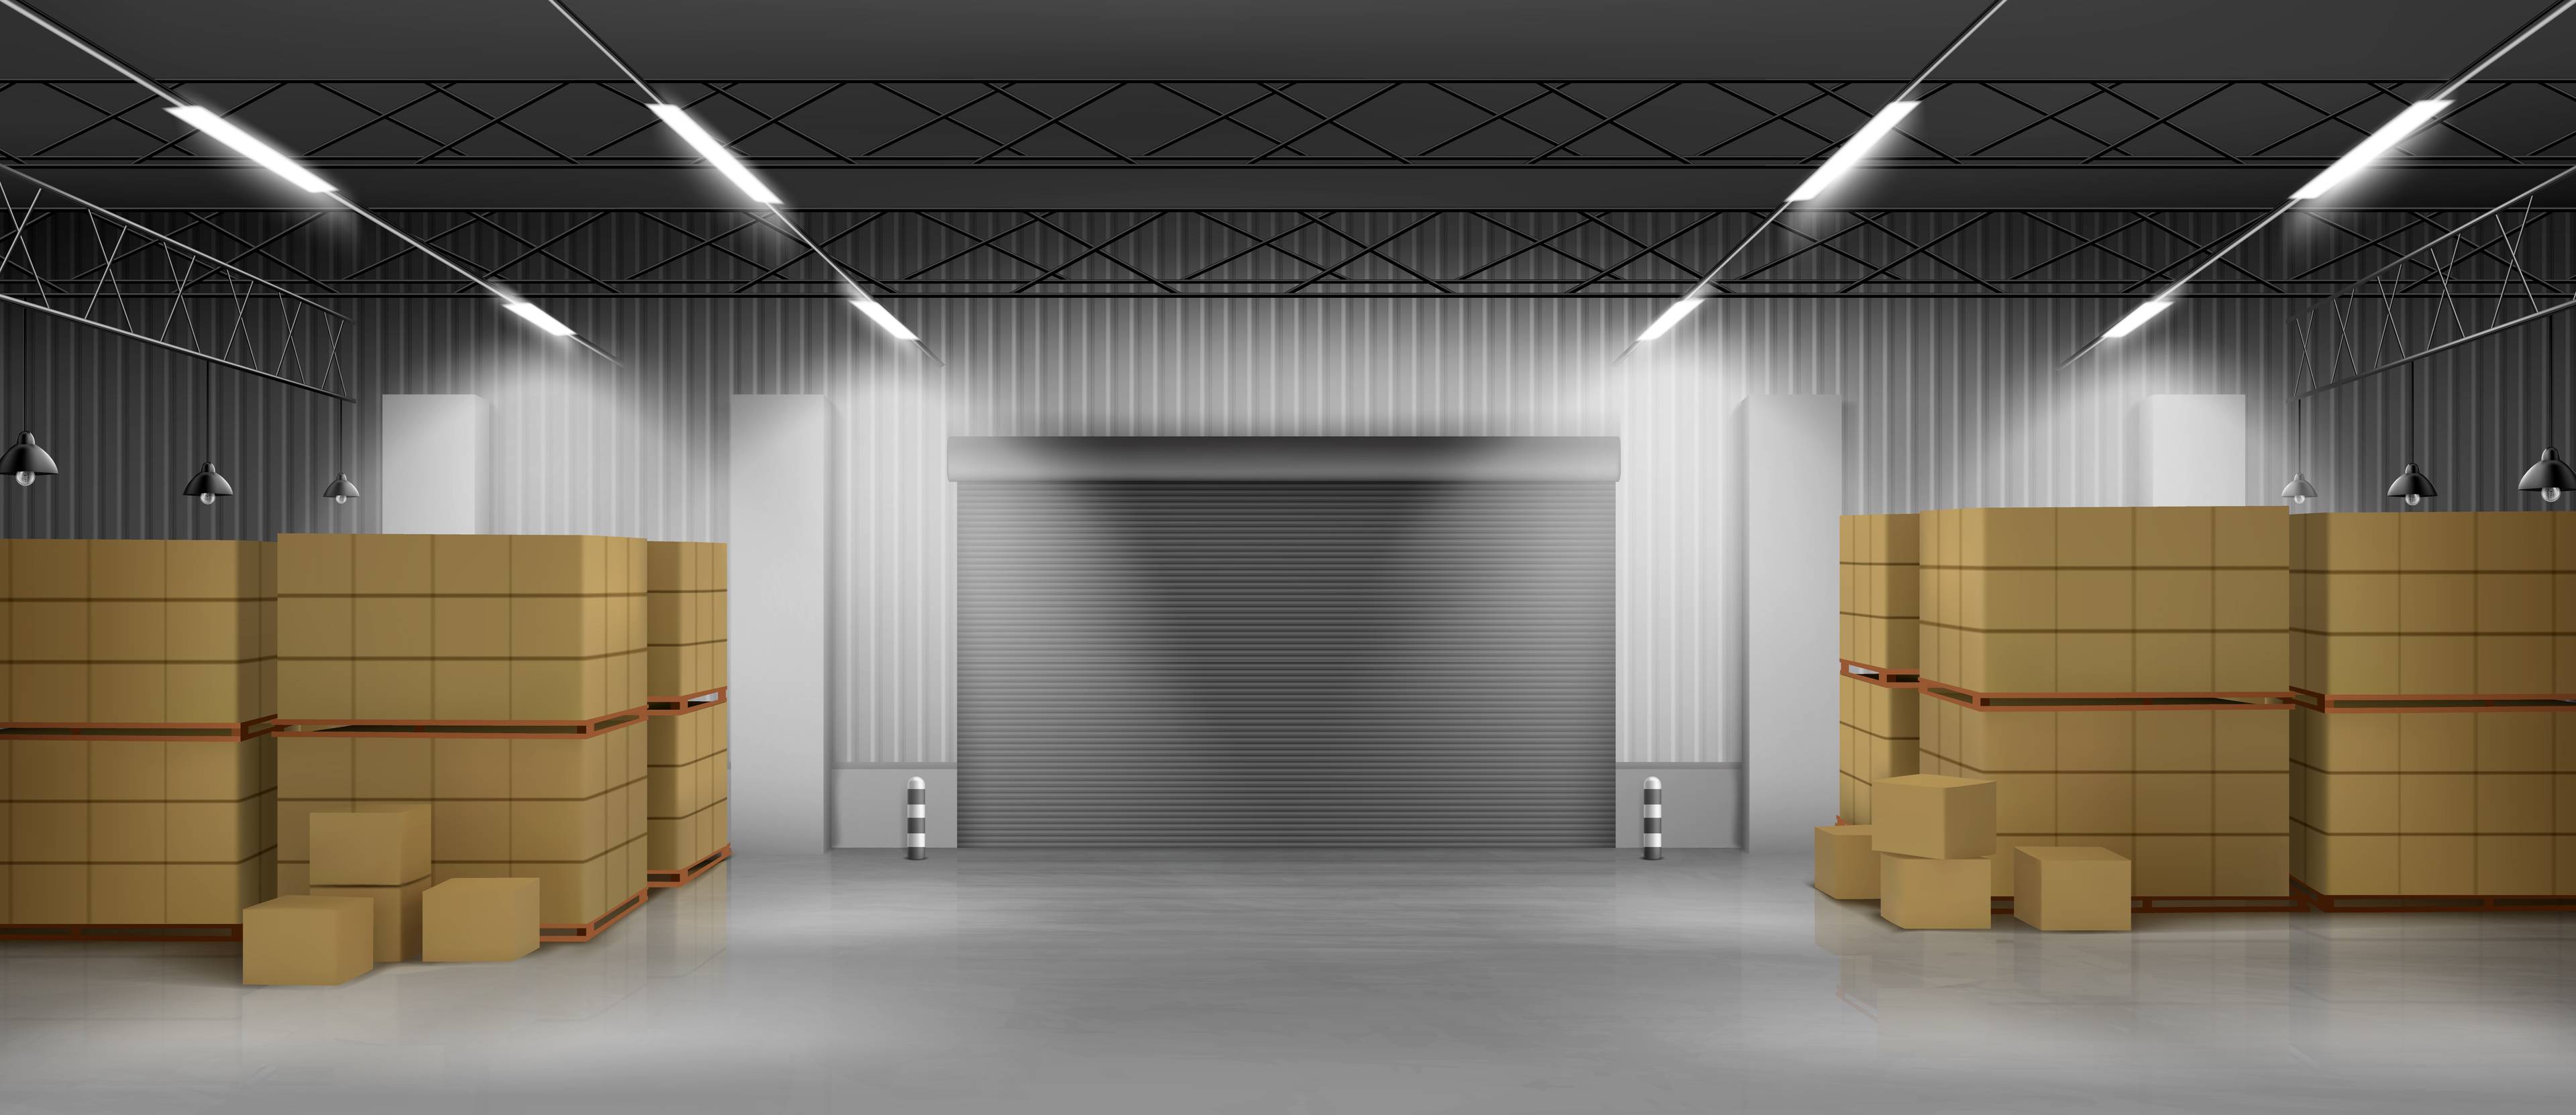 3D image of garage door and cardboard boxes